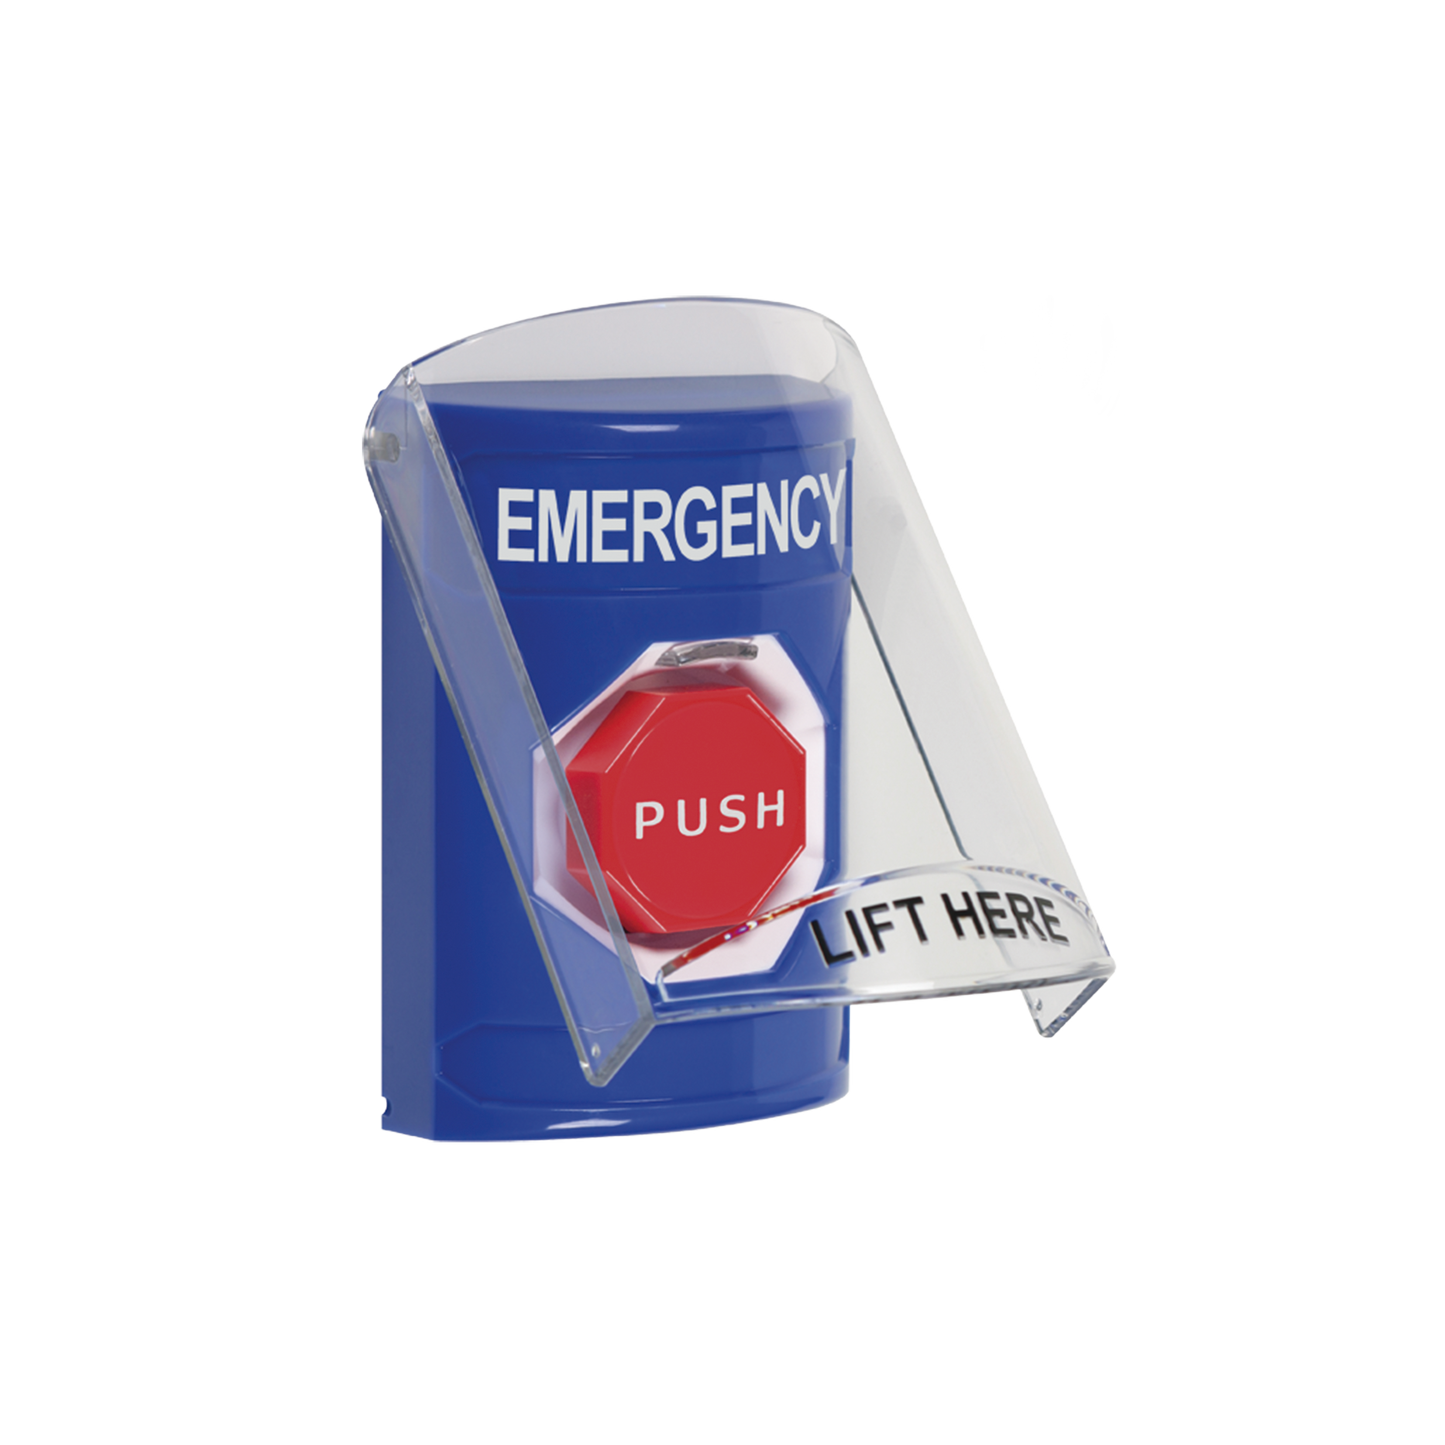 Botón de Emergencia con Bocina de Advertencia Integrada, Texto en Inglés, Tapa Protectora de Policarbonato Súper Resistente, Restablecimiento con Llave